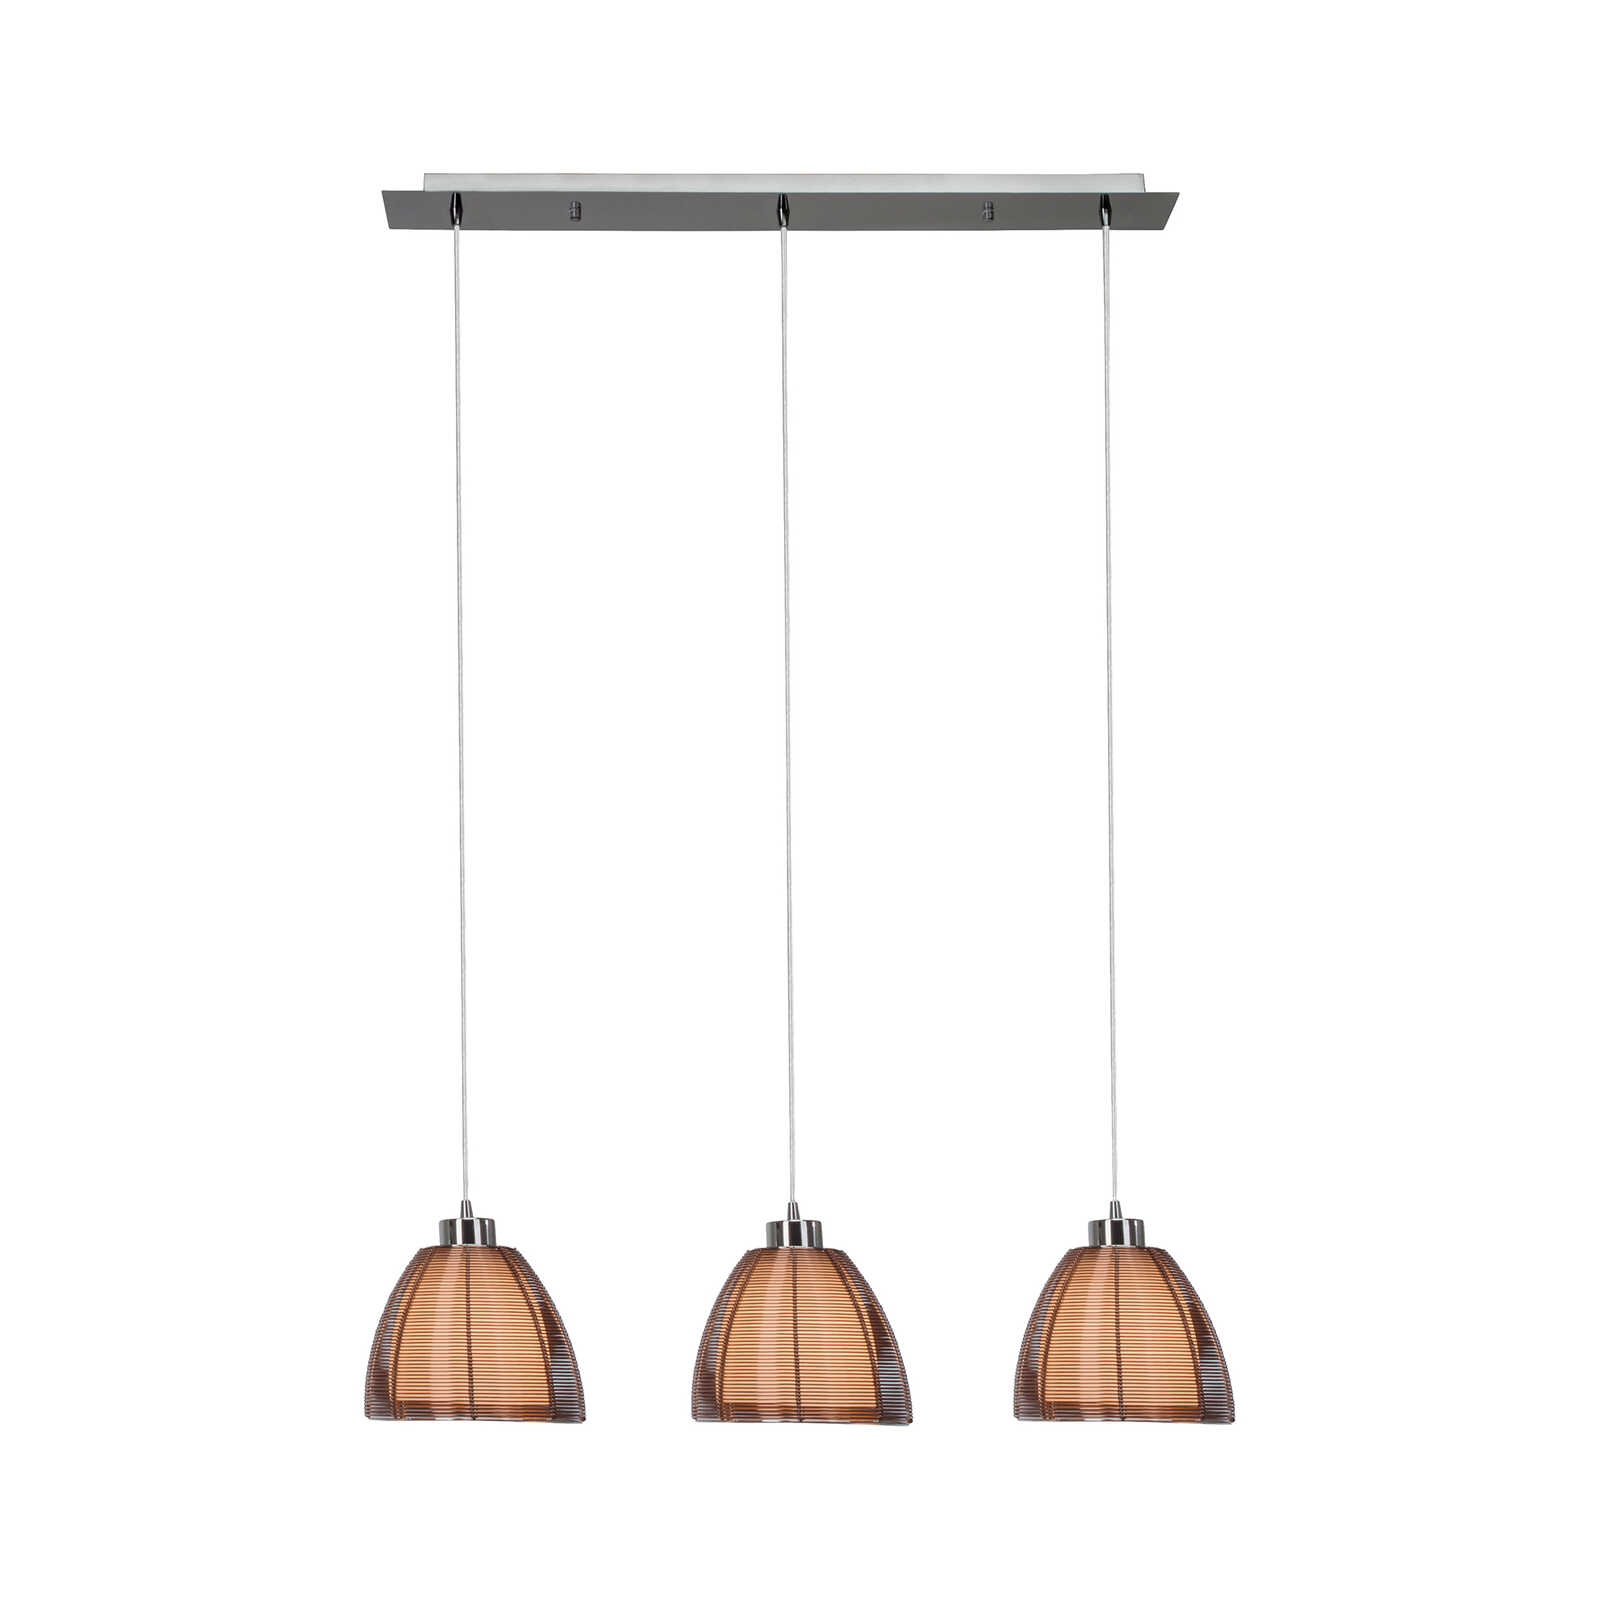 Glazen hanglamp - Maxime 8 - Bruin
